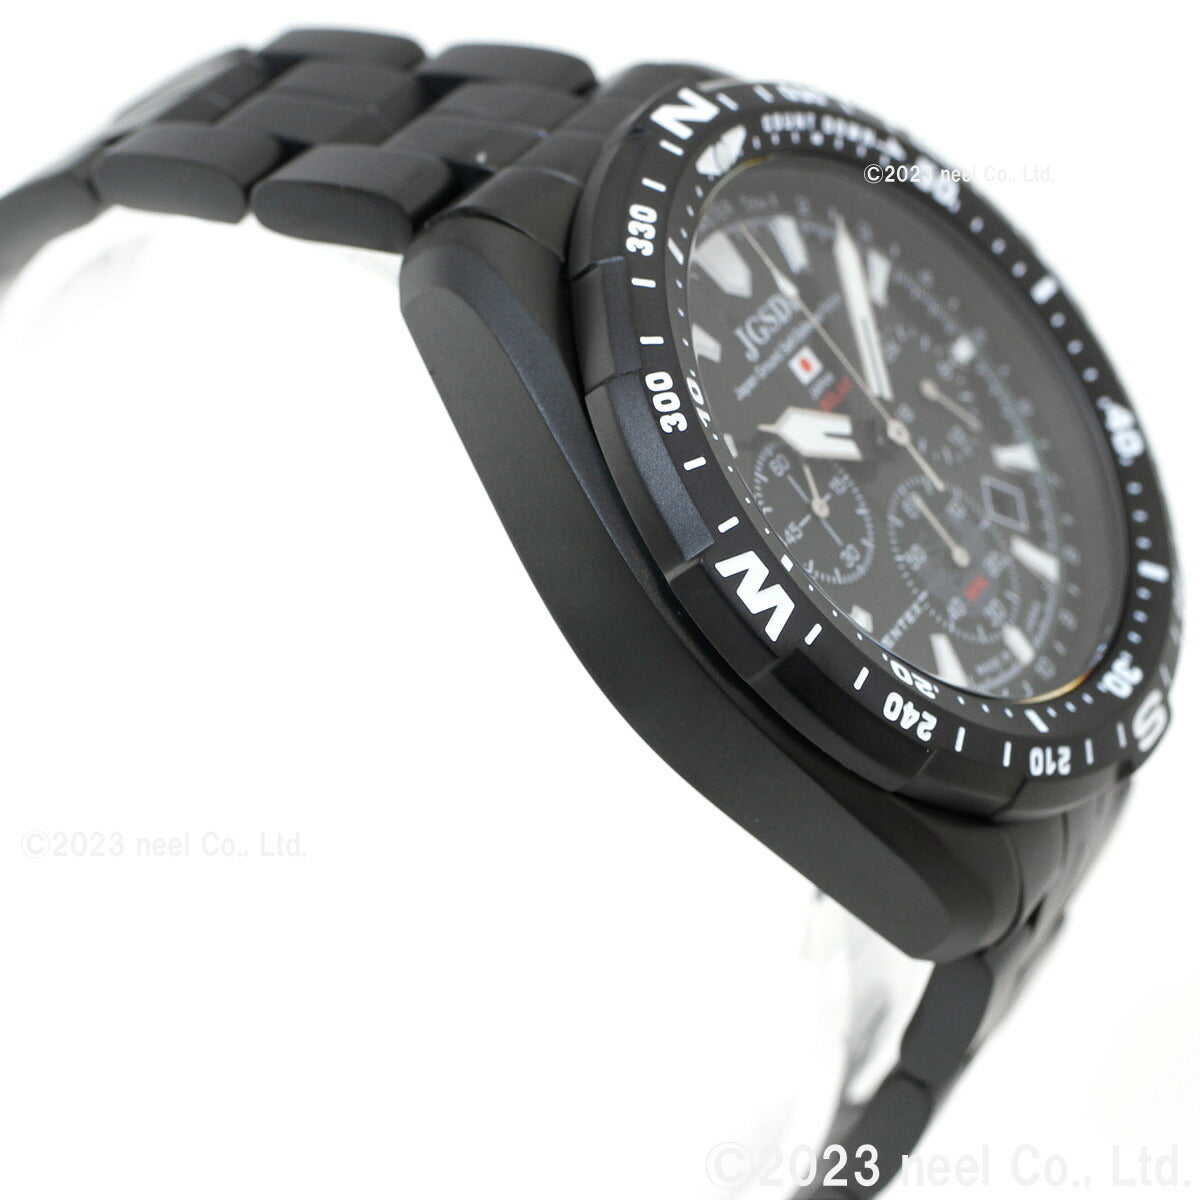 ケンテックス KENTEX ソーラー 腕時計 時計 メンズ JGSDF 陸上自衛隊 ソーラープロ JSDF SOLAR Pro クロノグラフ 日本製 S801M-1